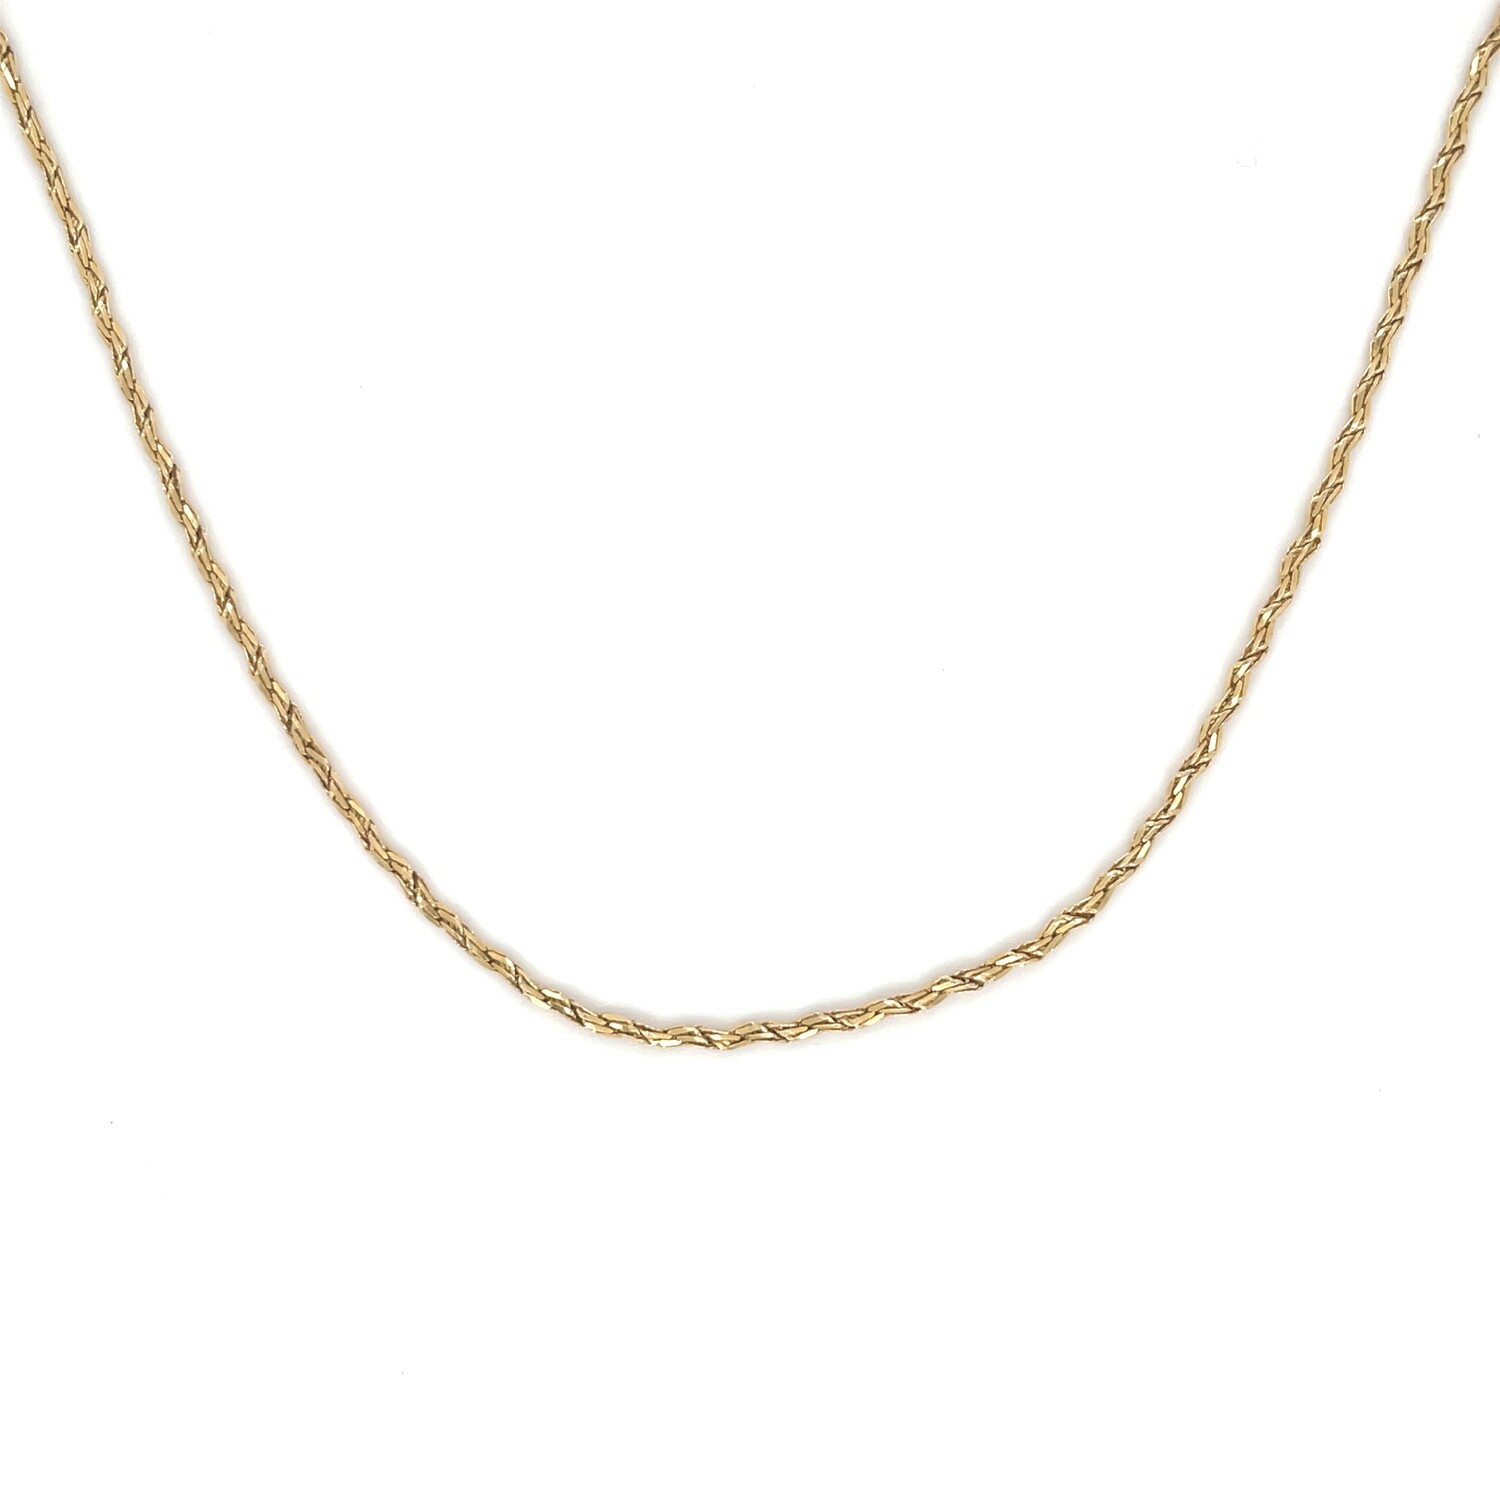 Fancy Link Chain in 14k Yellow Gold — 20”